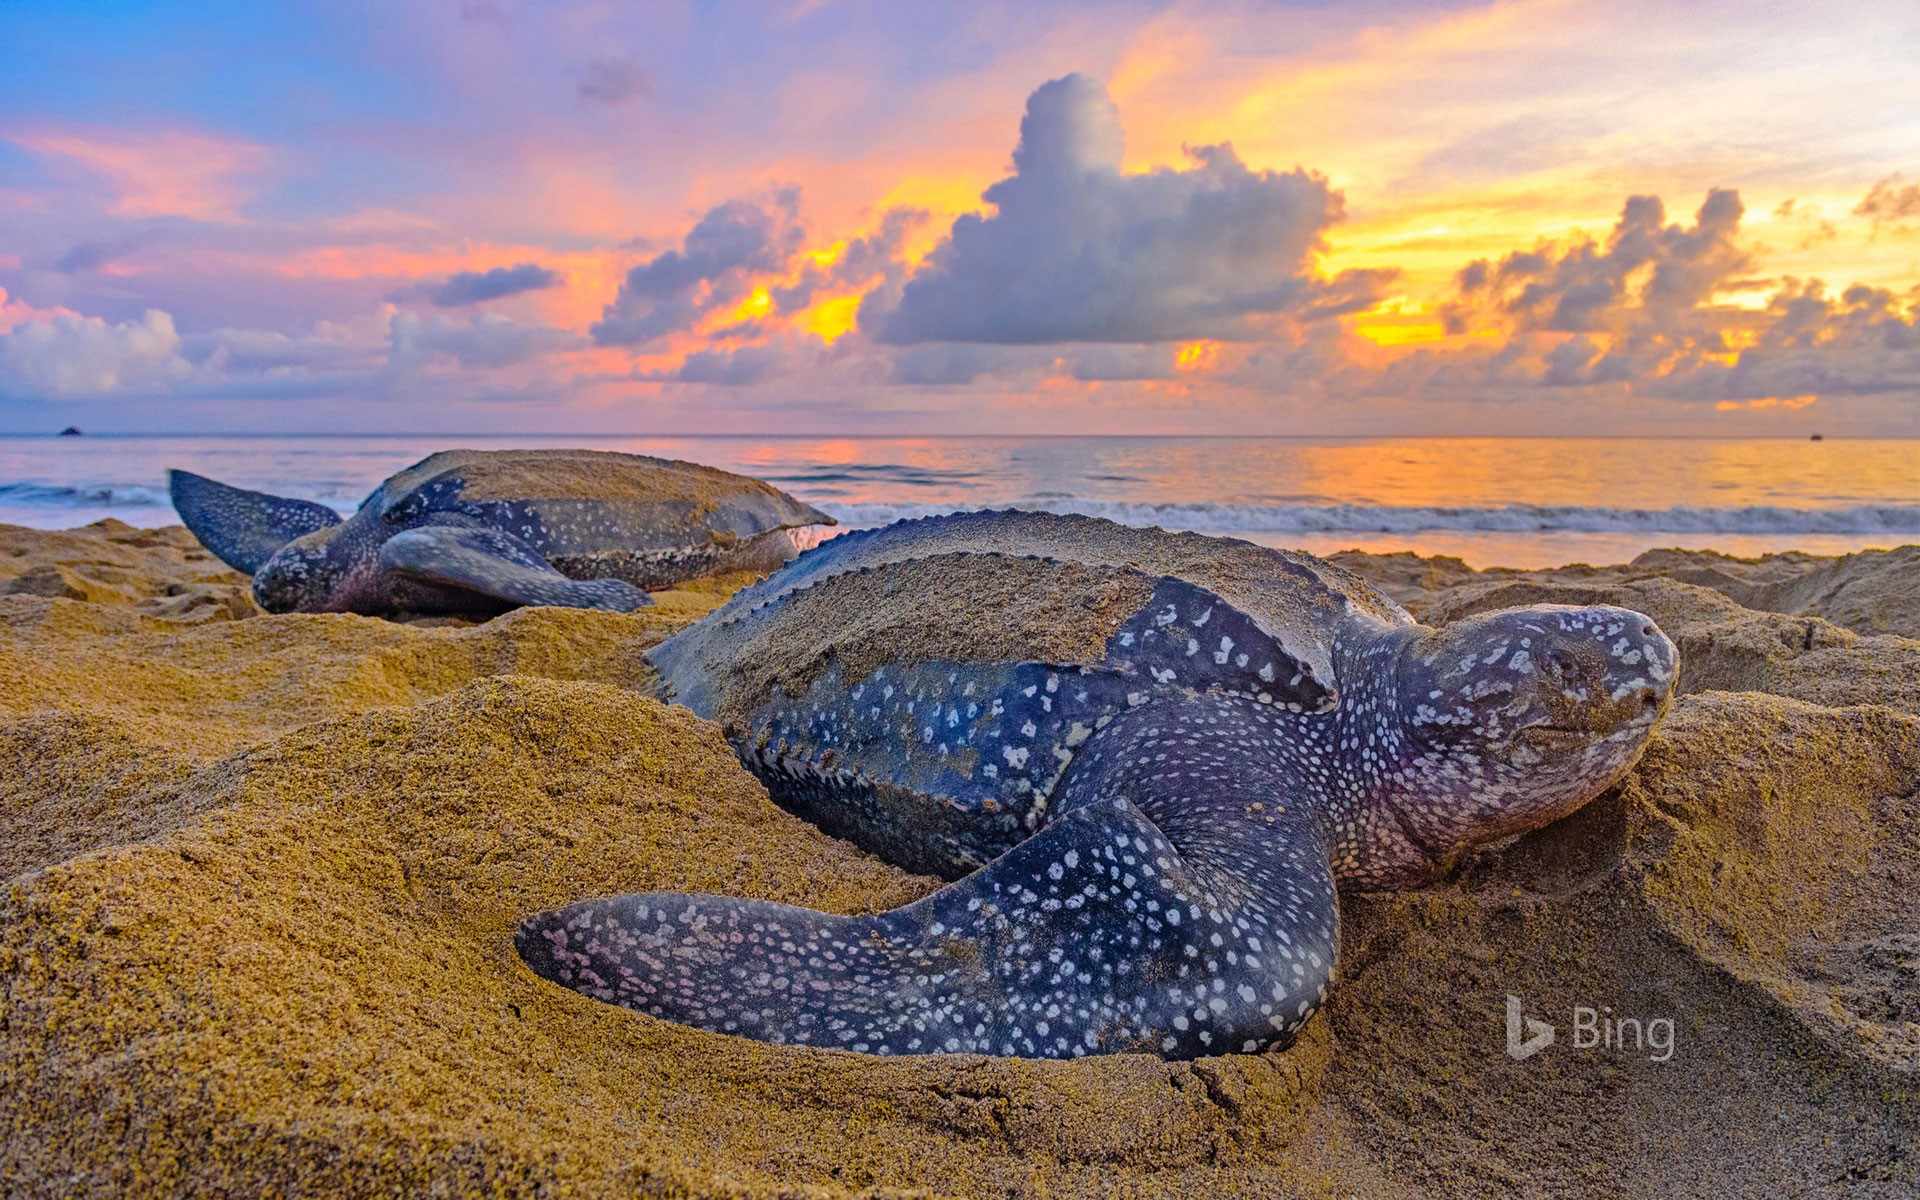 Leatherback sea turtles in Trinidad and Tobago